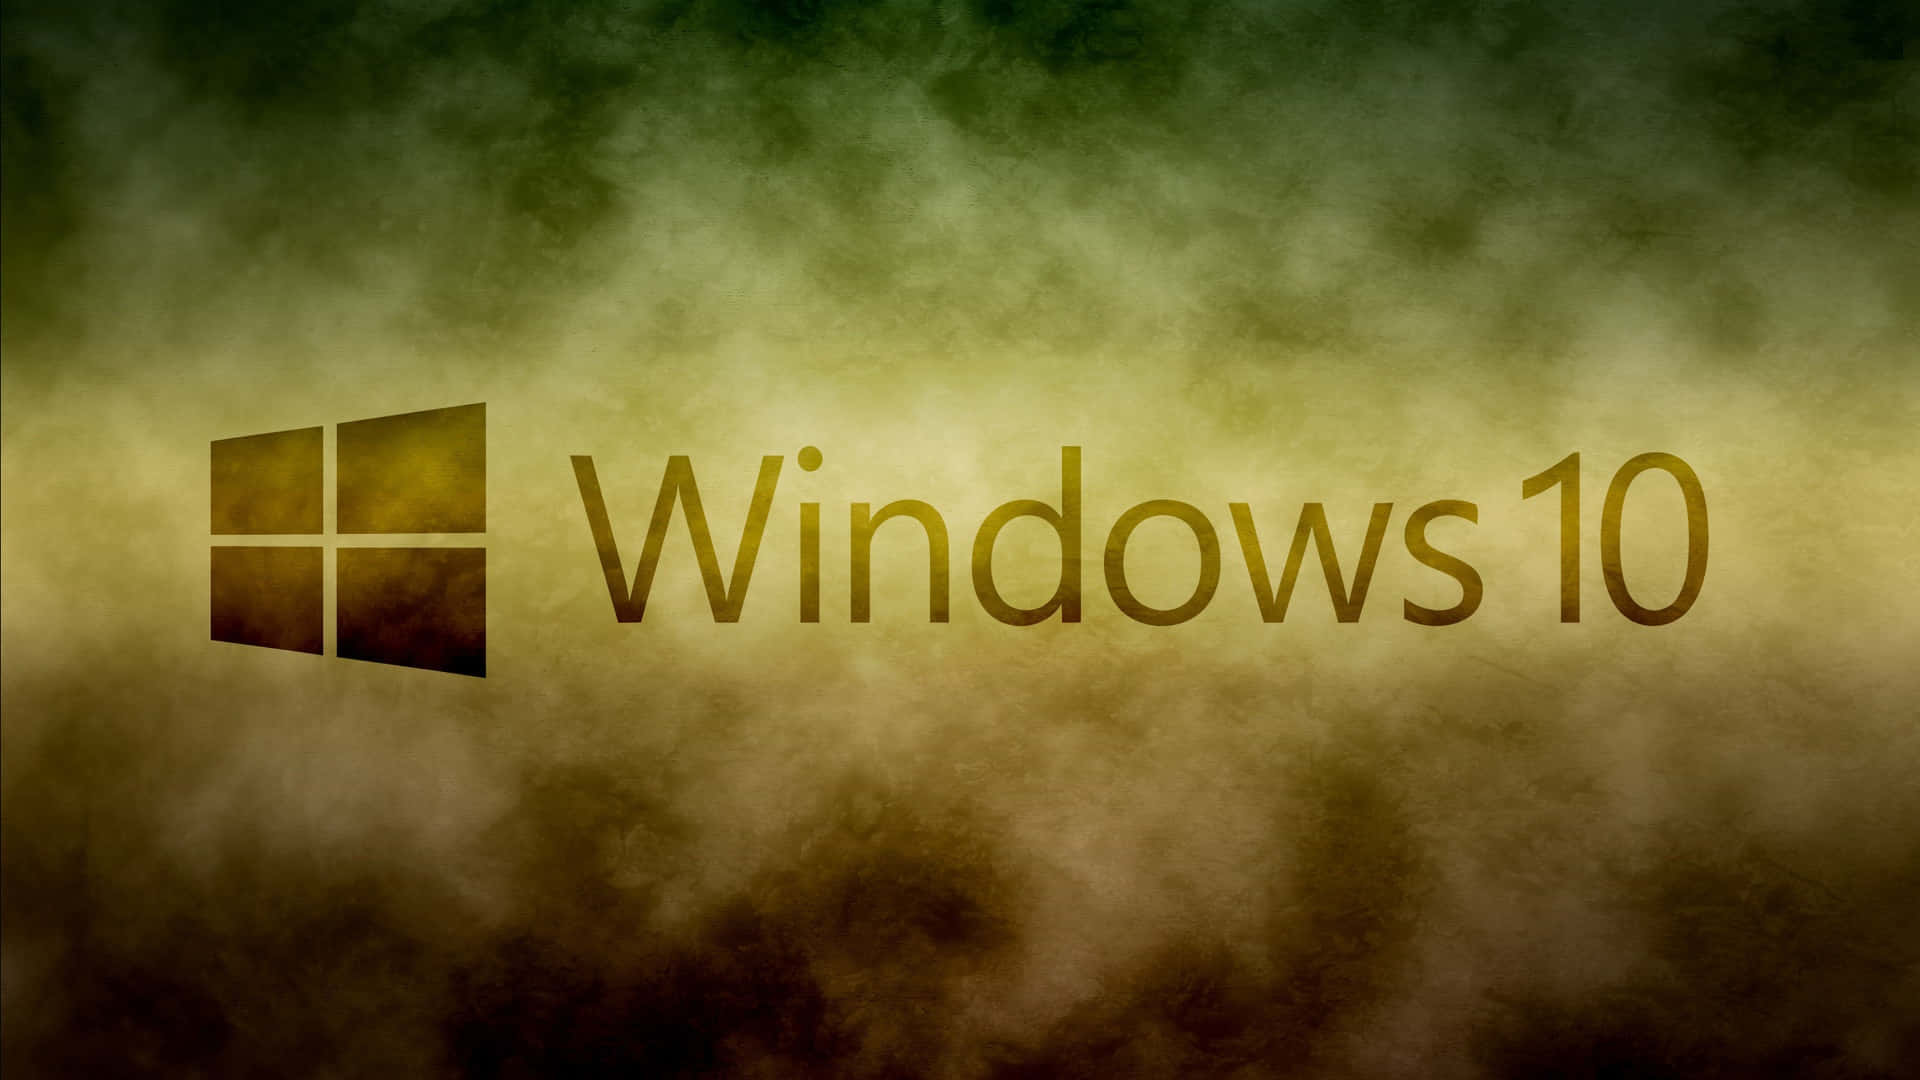 A Dynamic Windows 10 Background